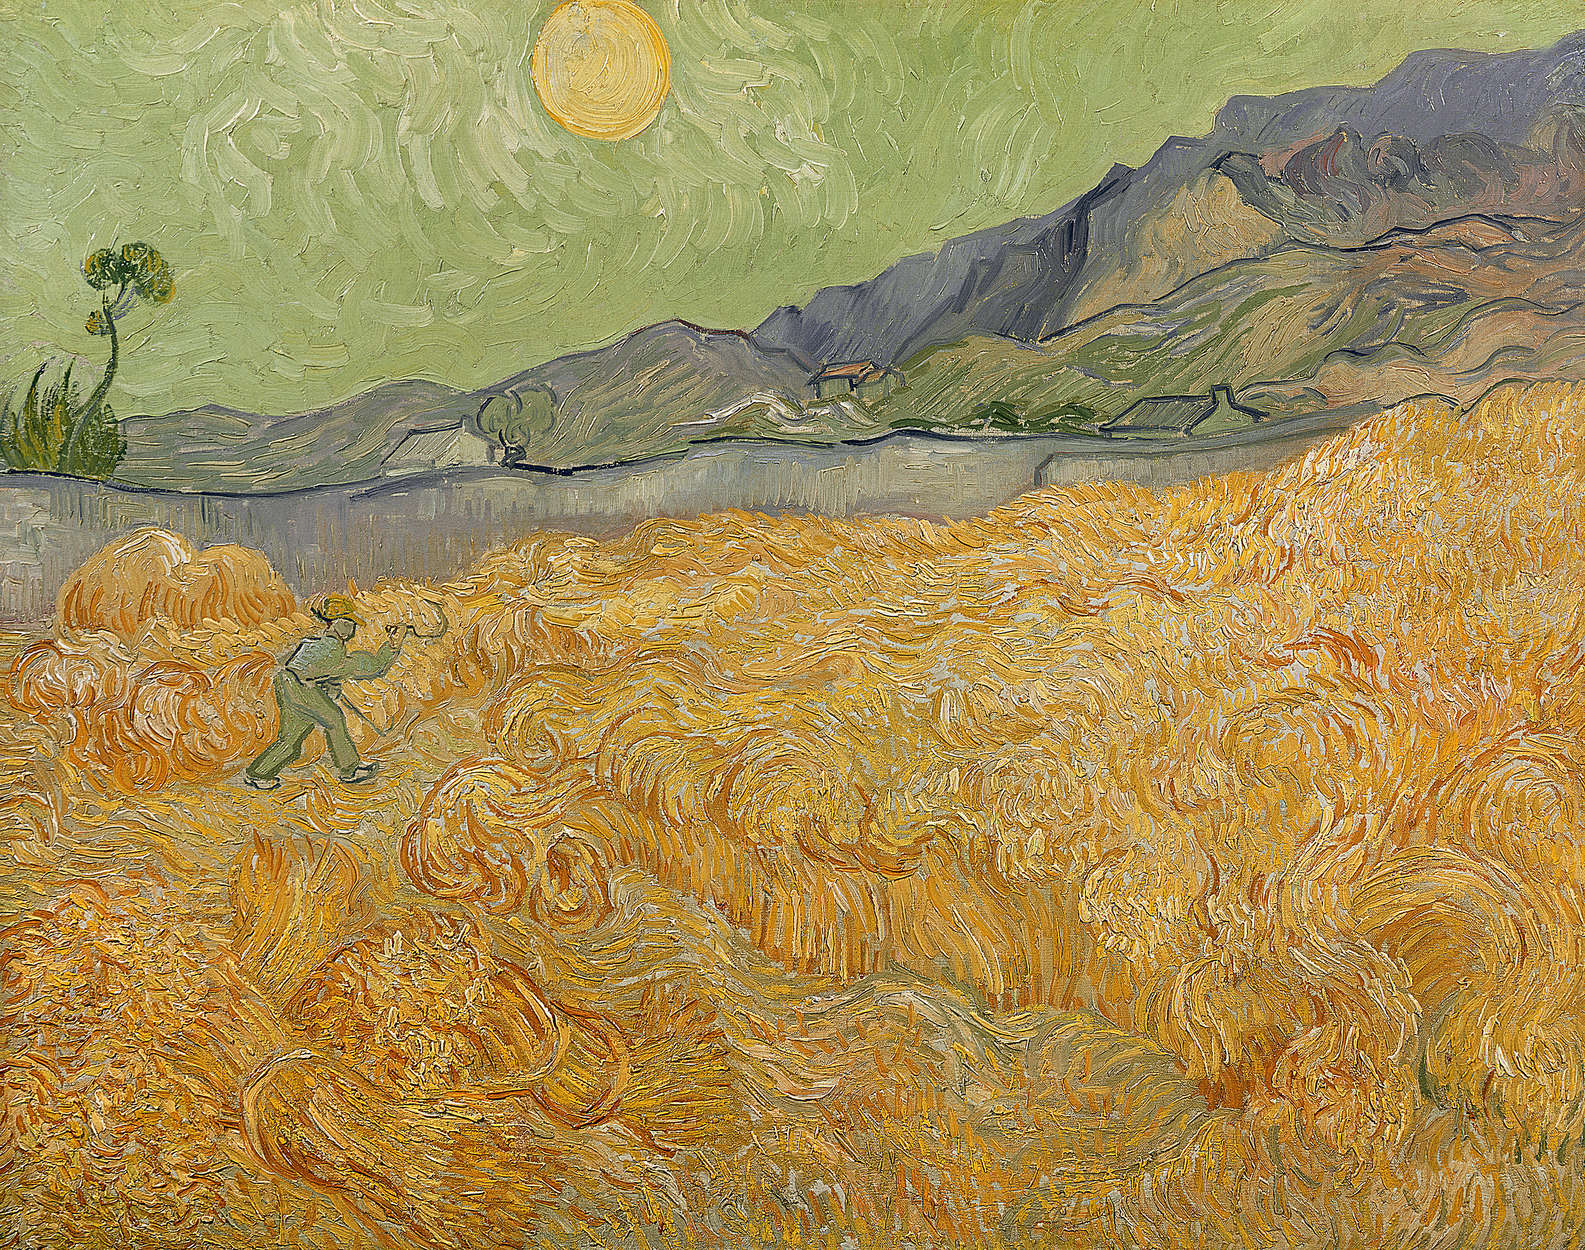             Campo di grano con mietitore" murale di Vincent van Gogh
        